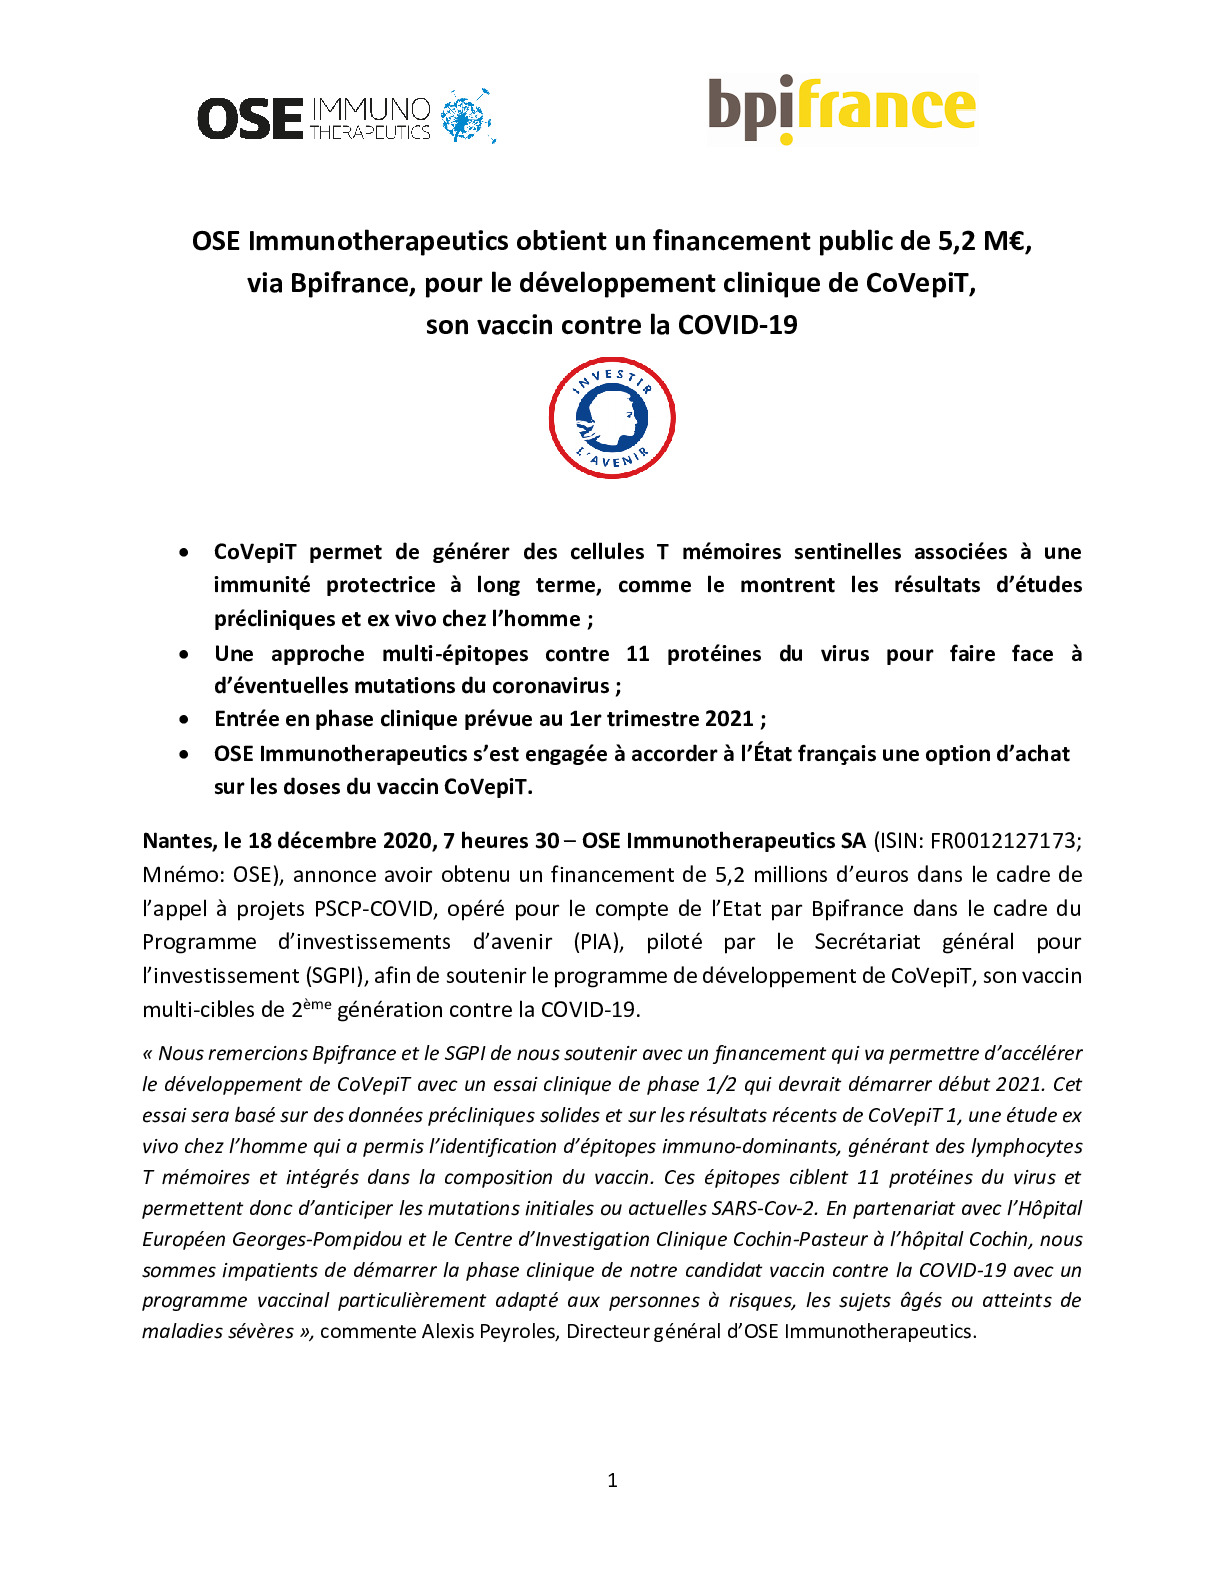 2020 12 18 – CP – OSE Immunotherapeutics obtient un financement public de 52 M via Bpifrance-pdf